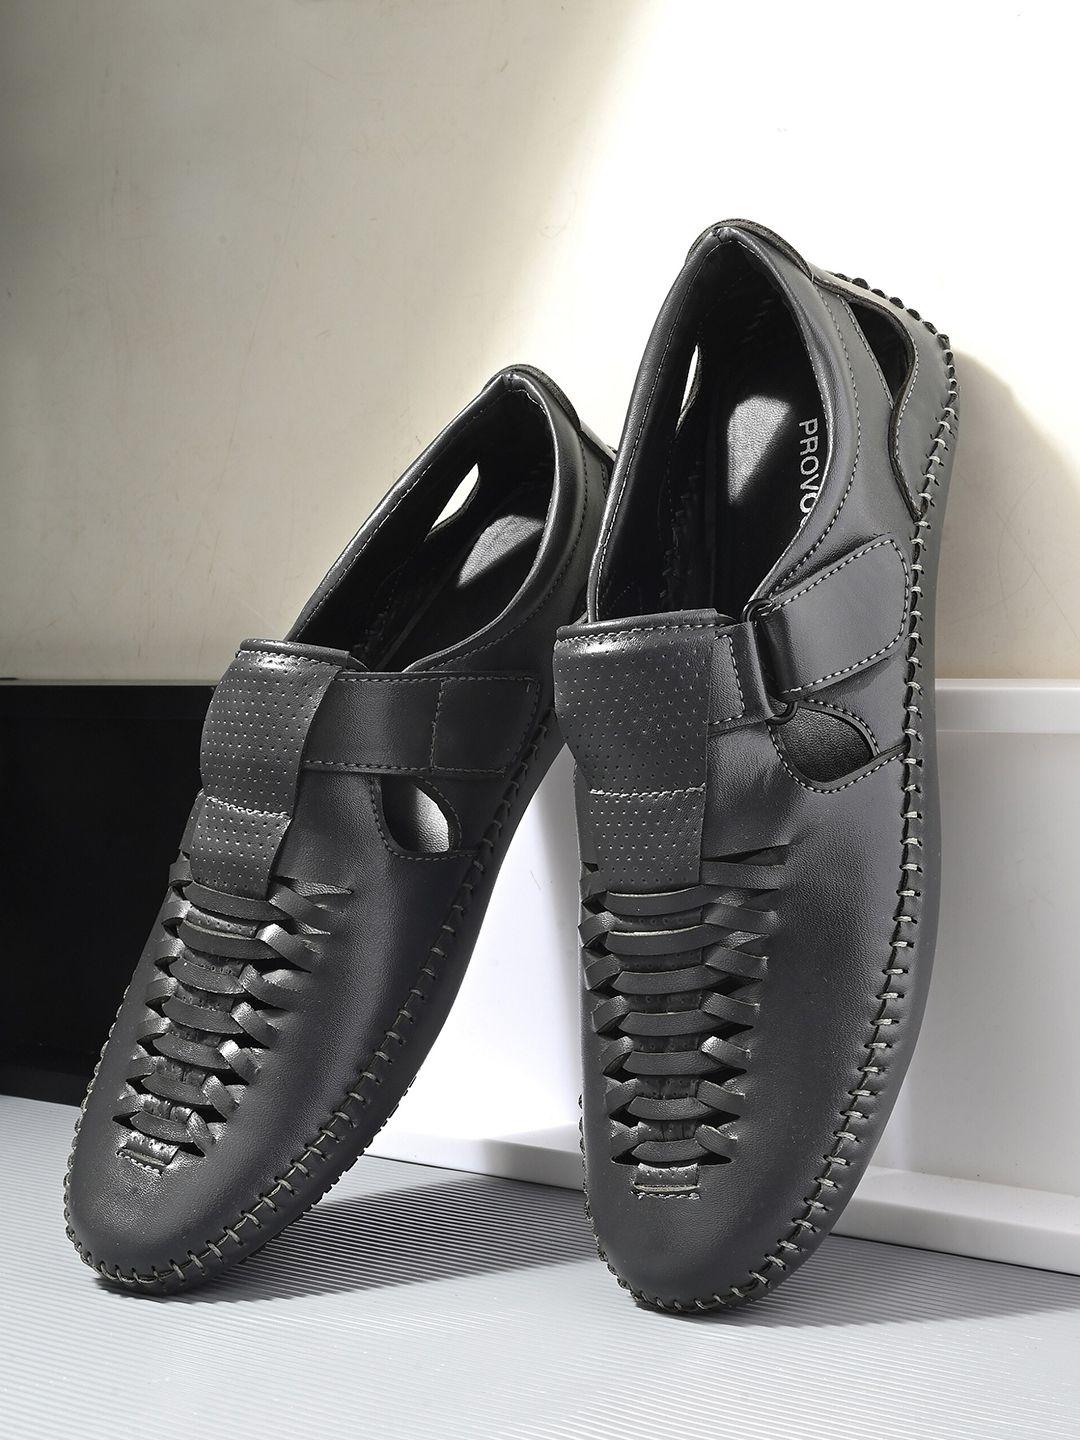 provogue-men-textured-shoe-style-sandals